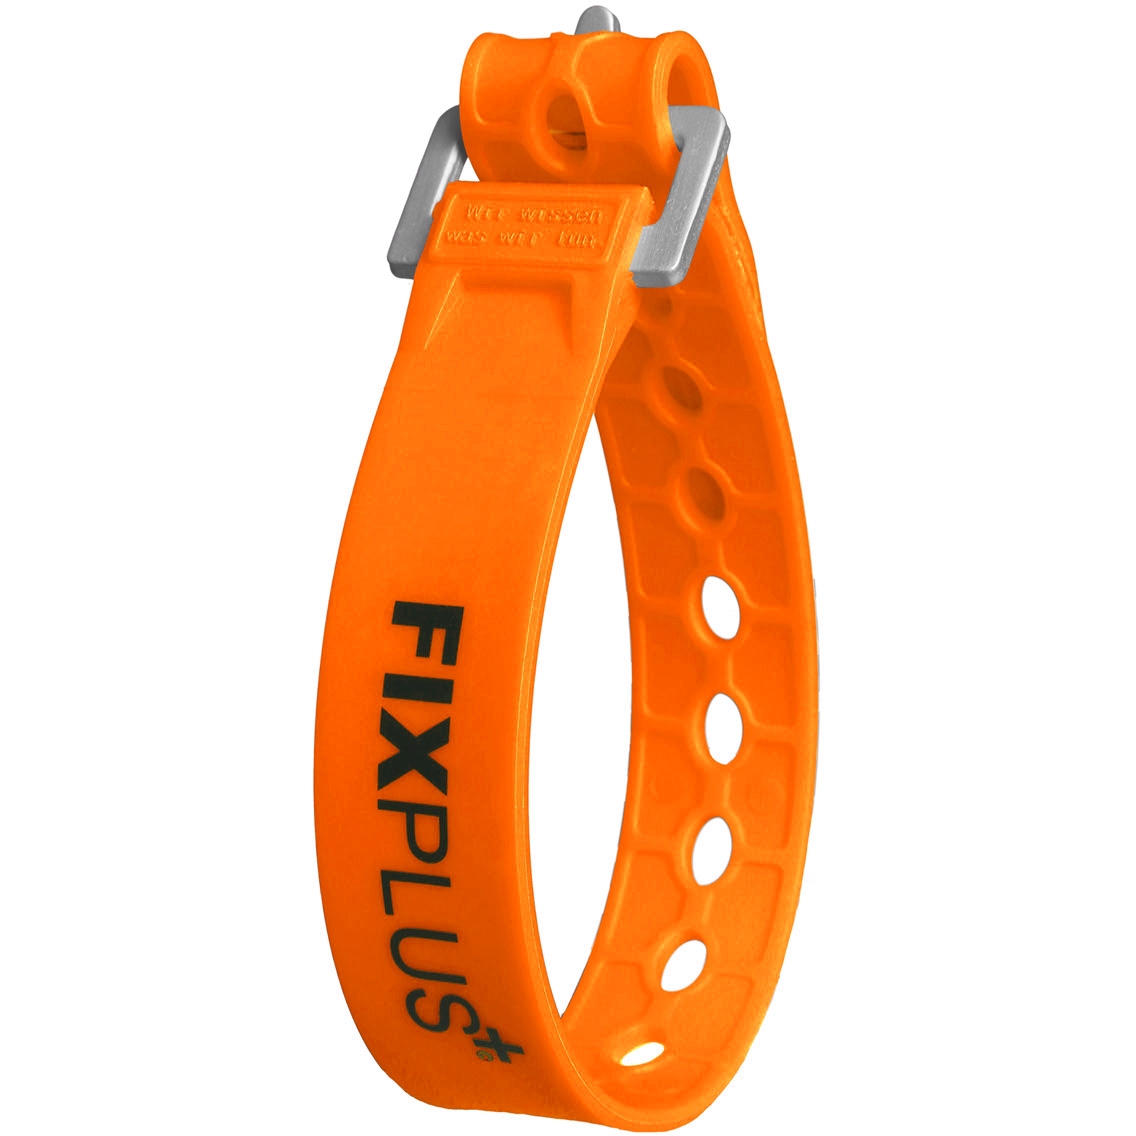 Produktbild von FixPlus Strap Gummizurrband 35cm - orange